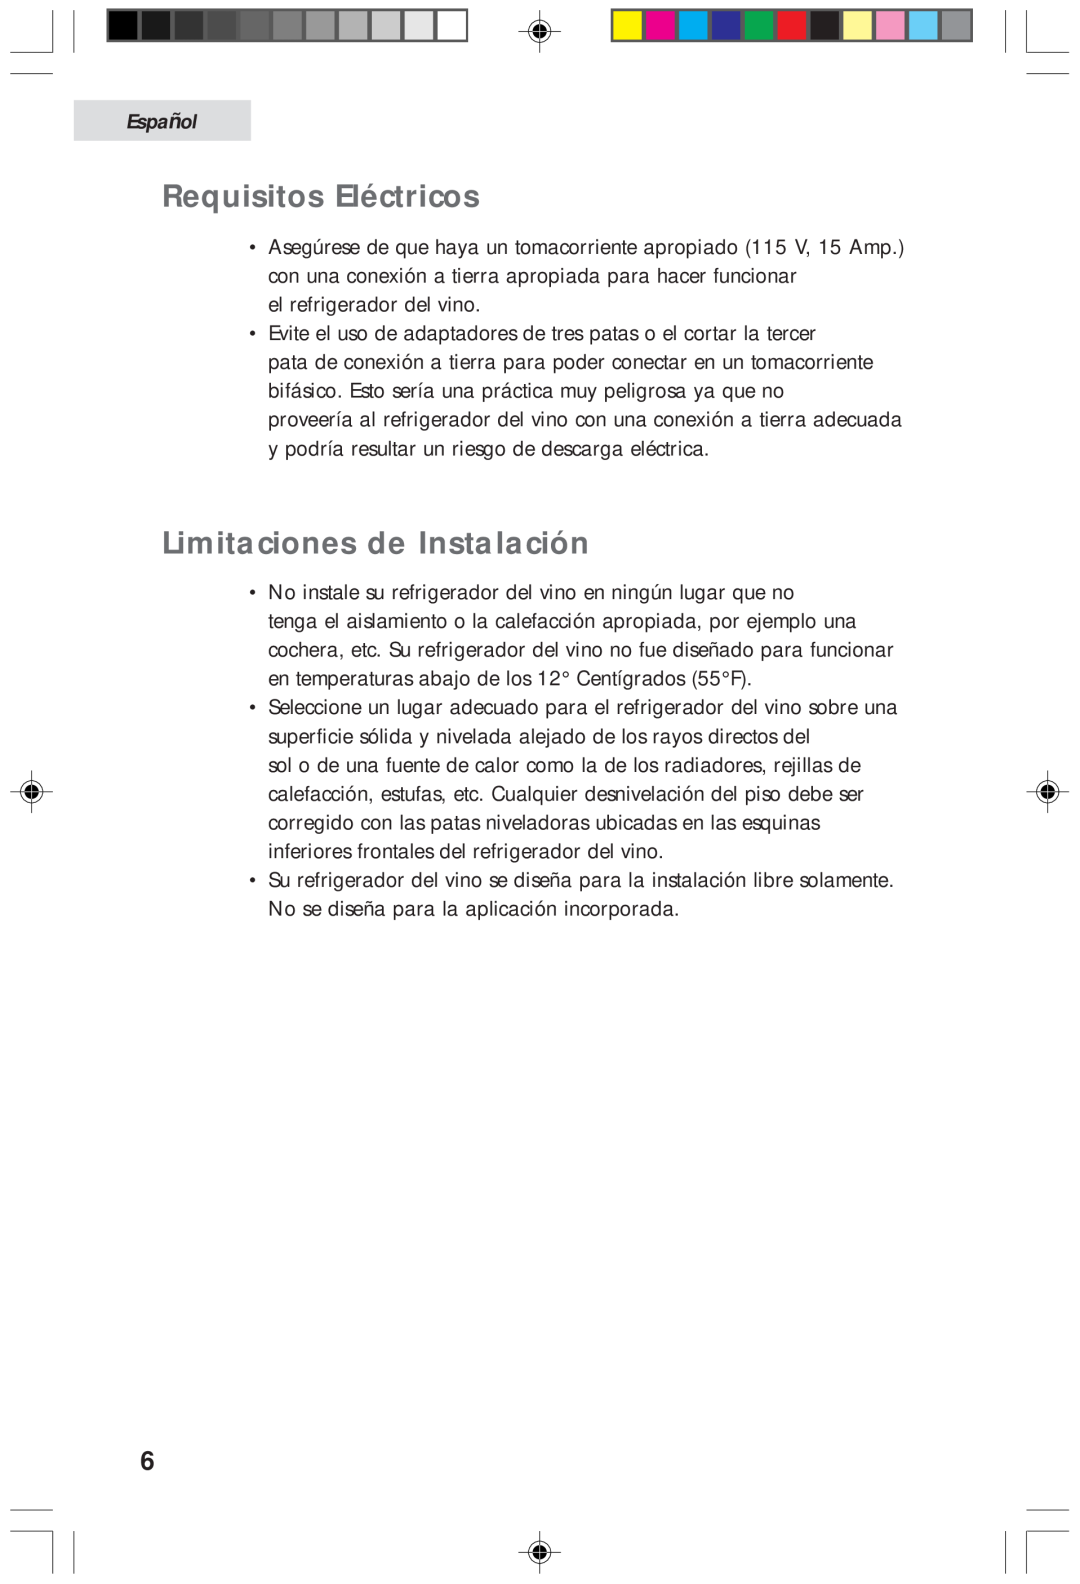 Haier HVF020A, HVFM20A user manual Requisitos Eléctricos, Limitaciones de Instalación, Español 